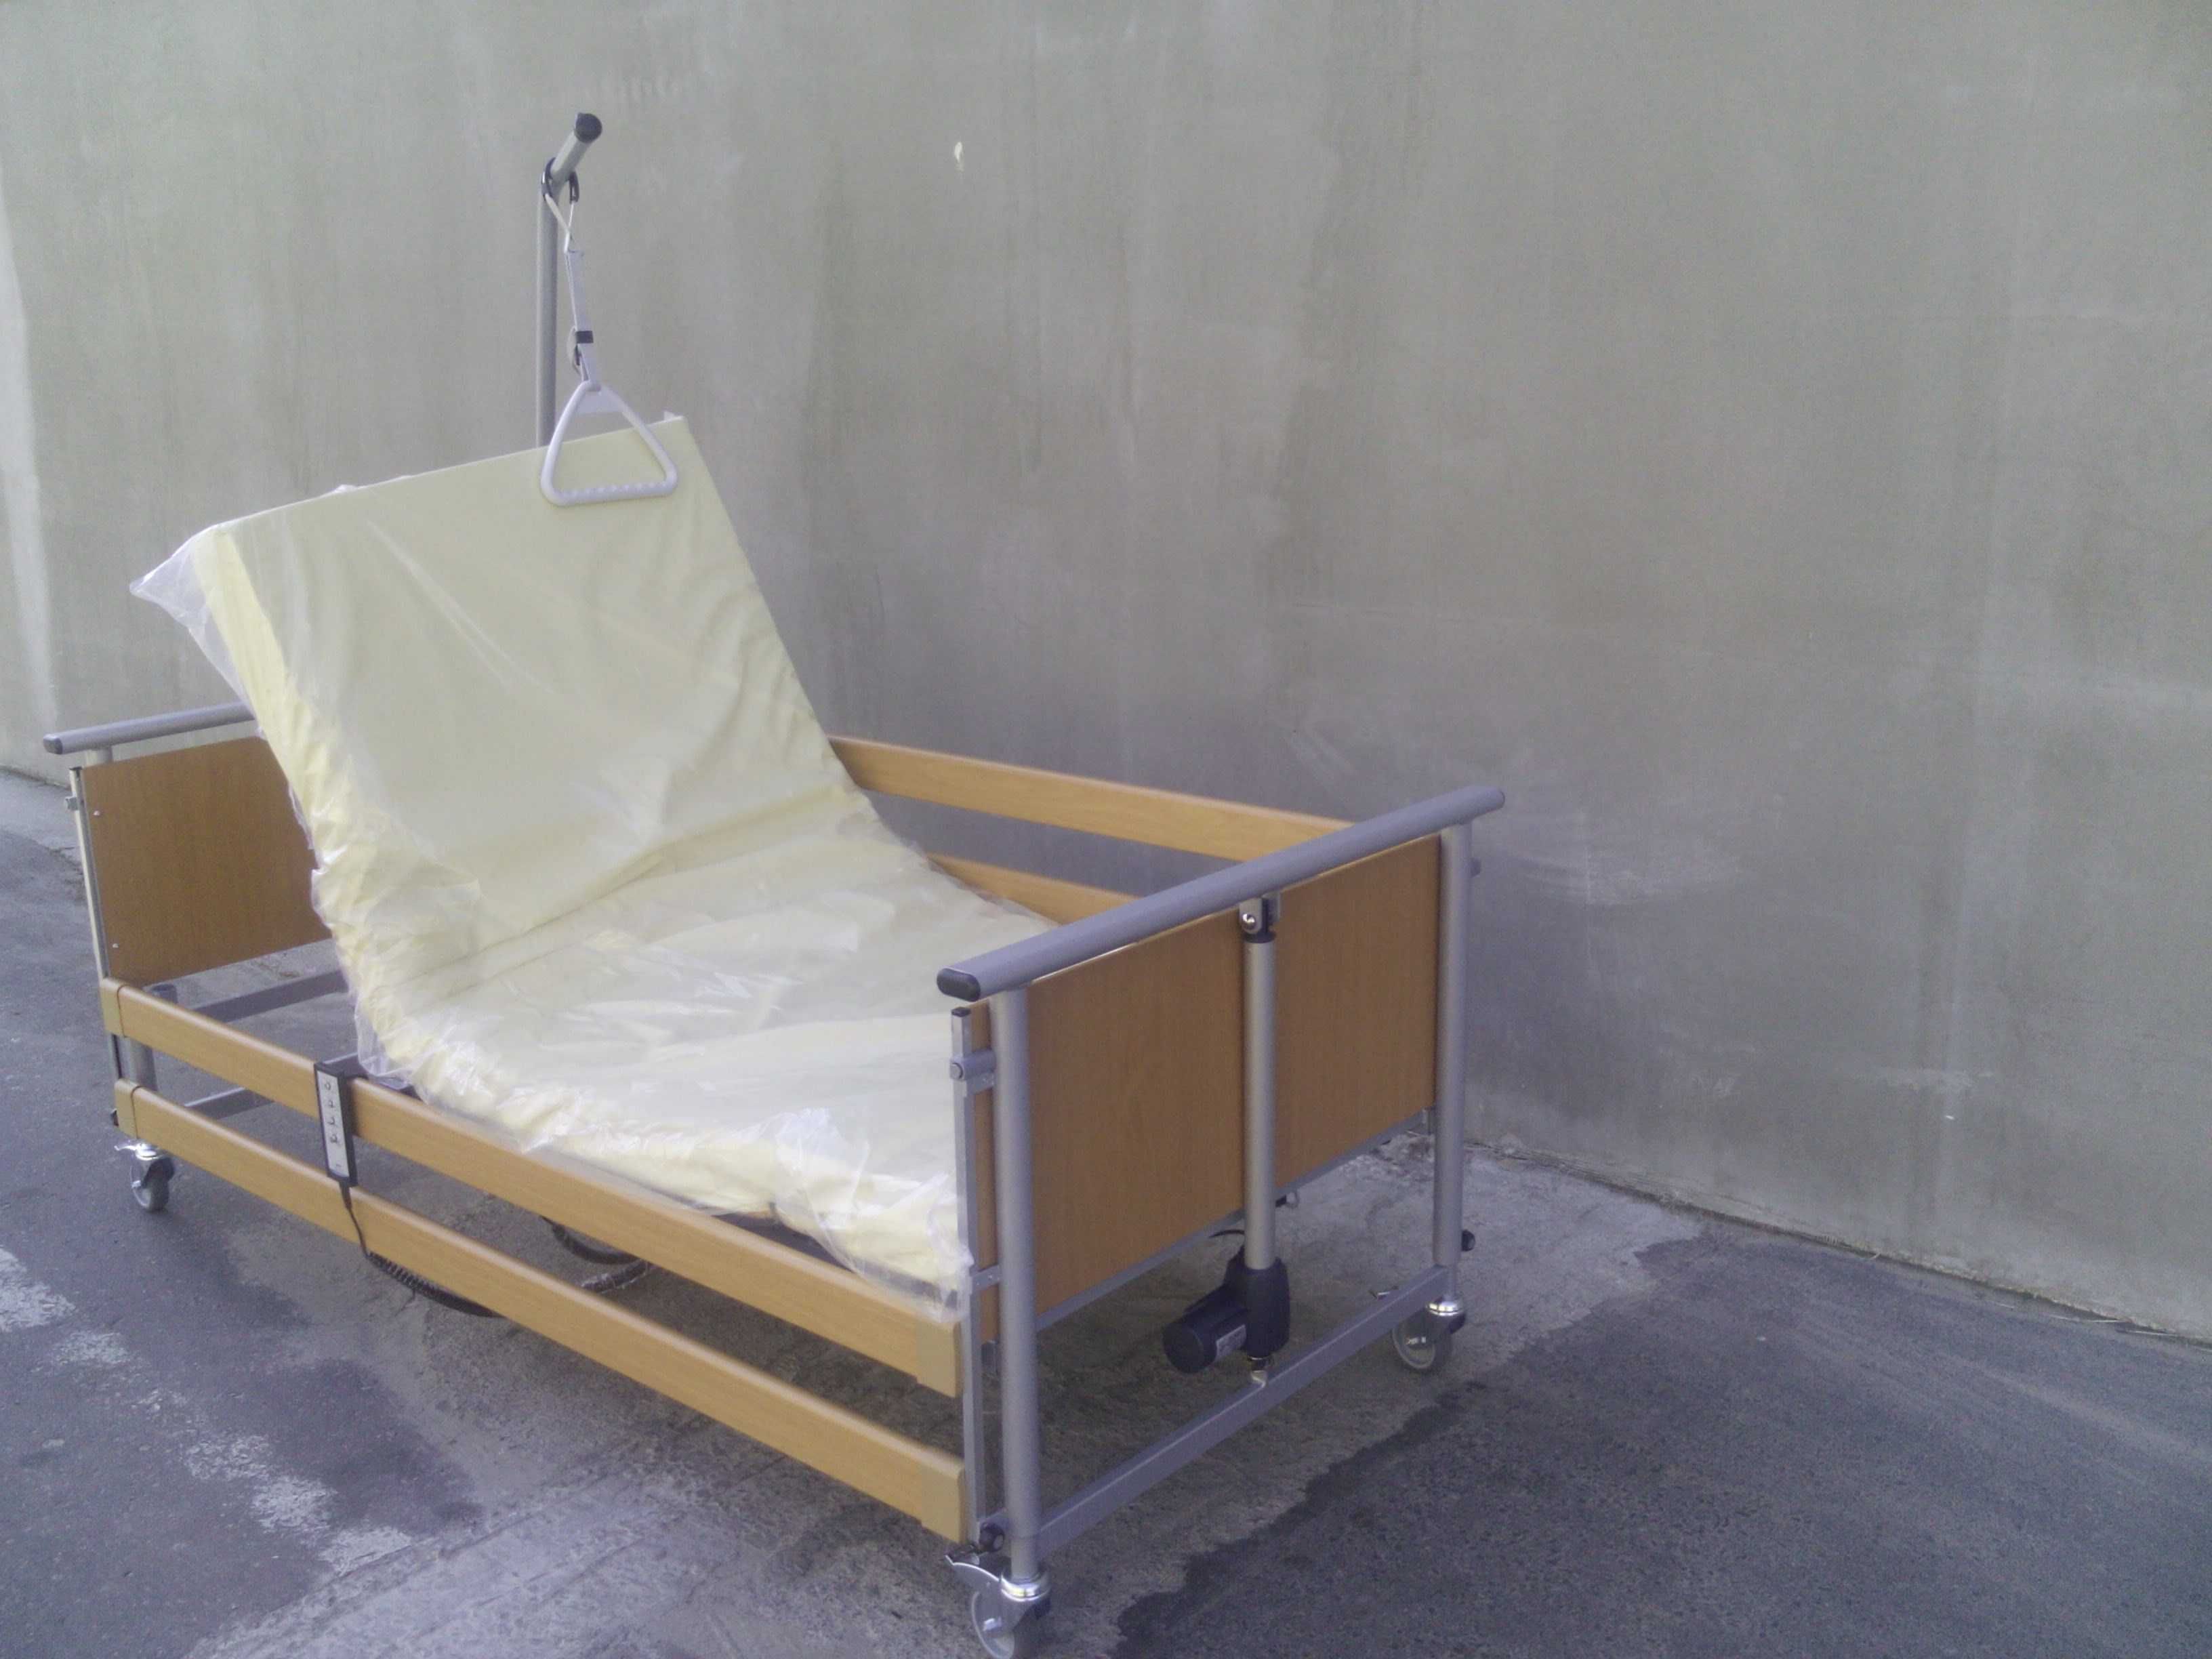 Łóżko rehabilitacyjne Elbur PB 325. Dofinansowanie. Dostawa i montaż